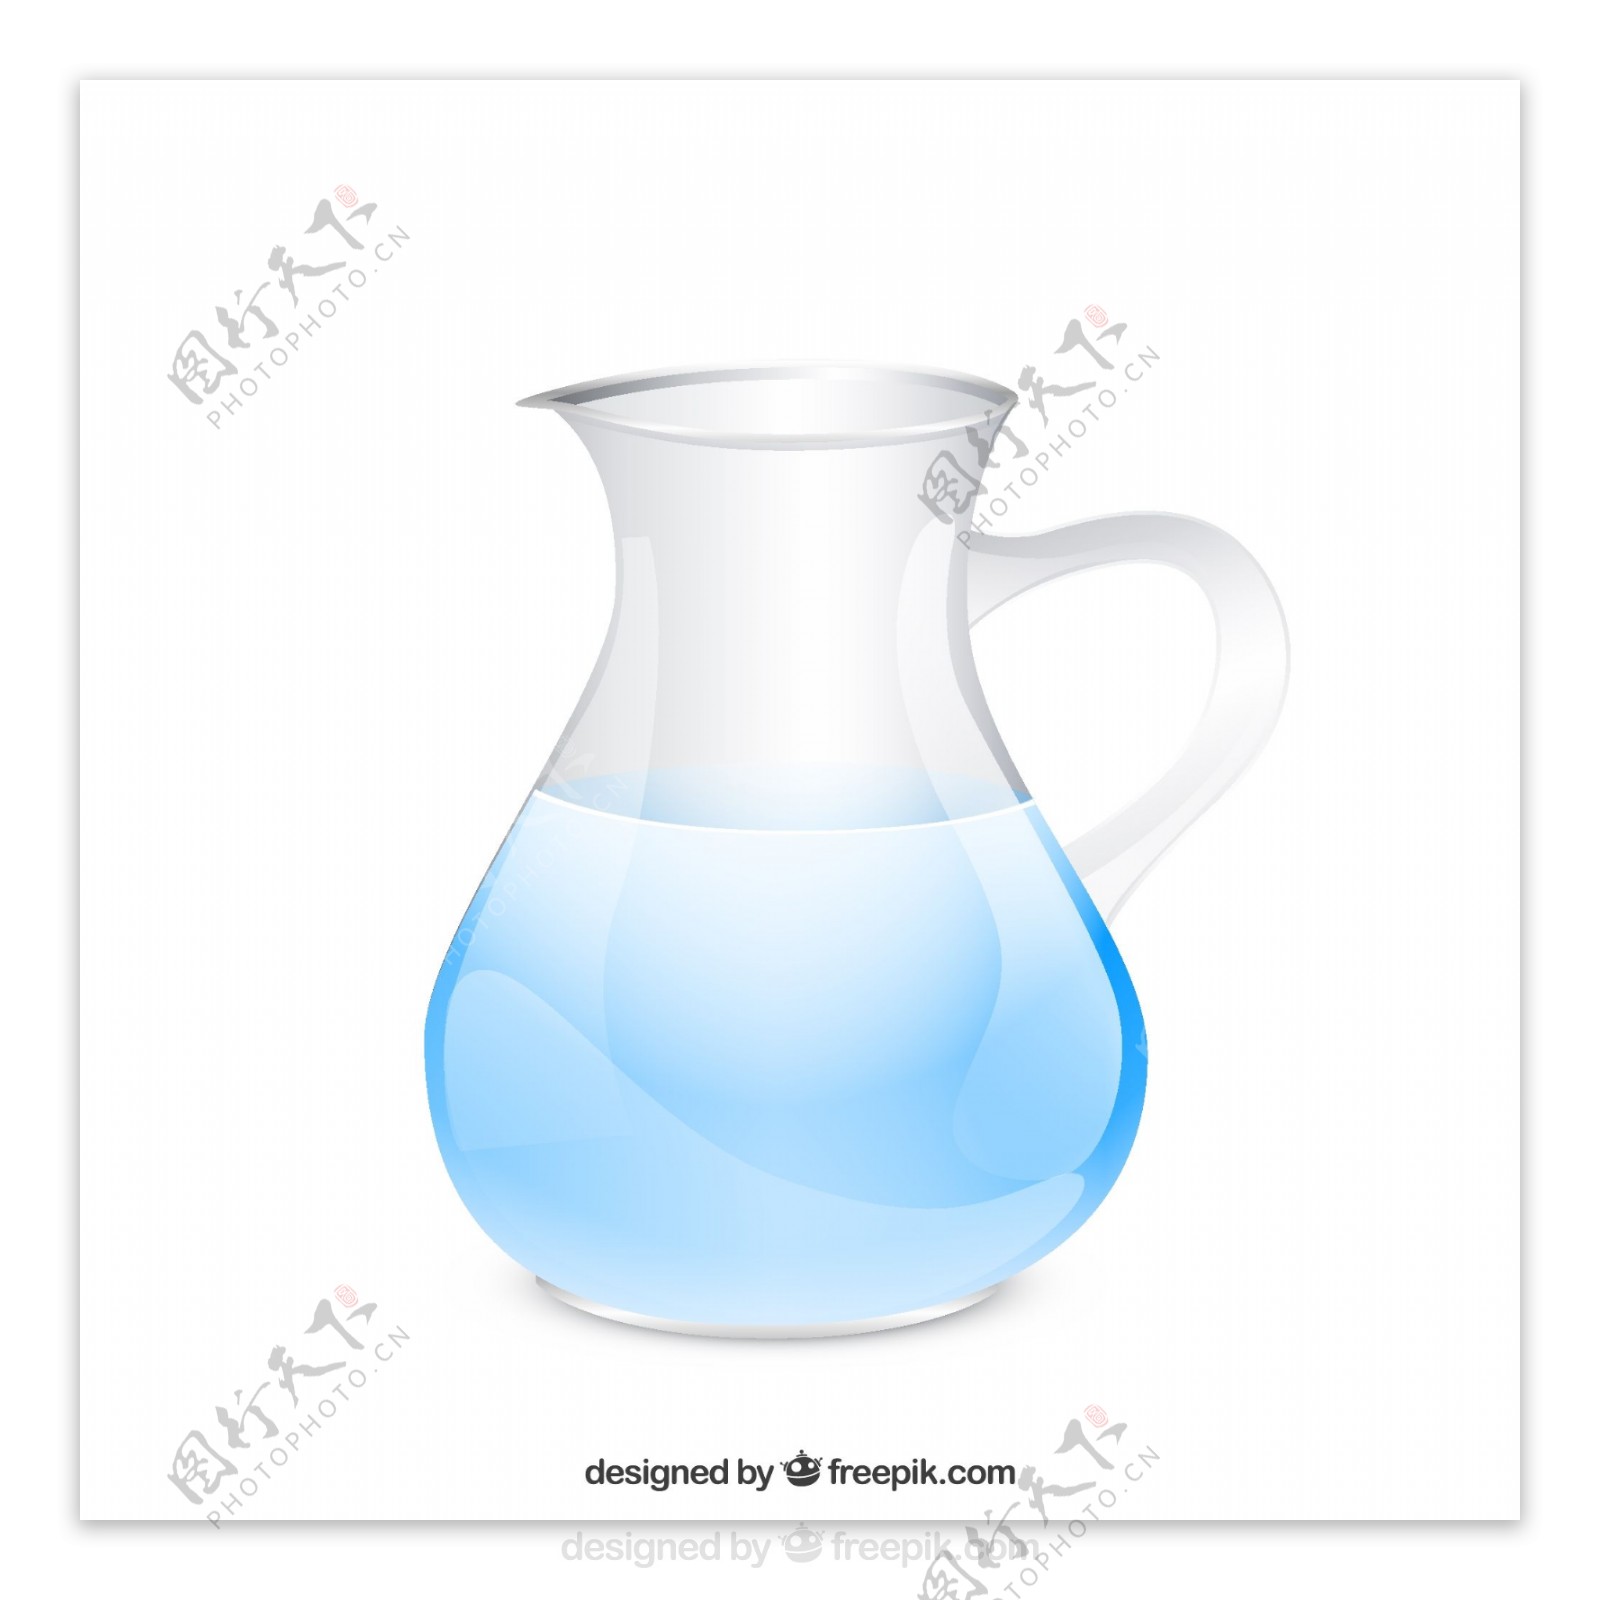 透明玻璃水壶